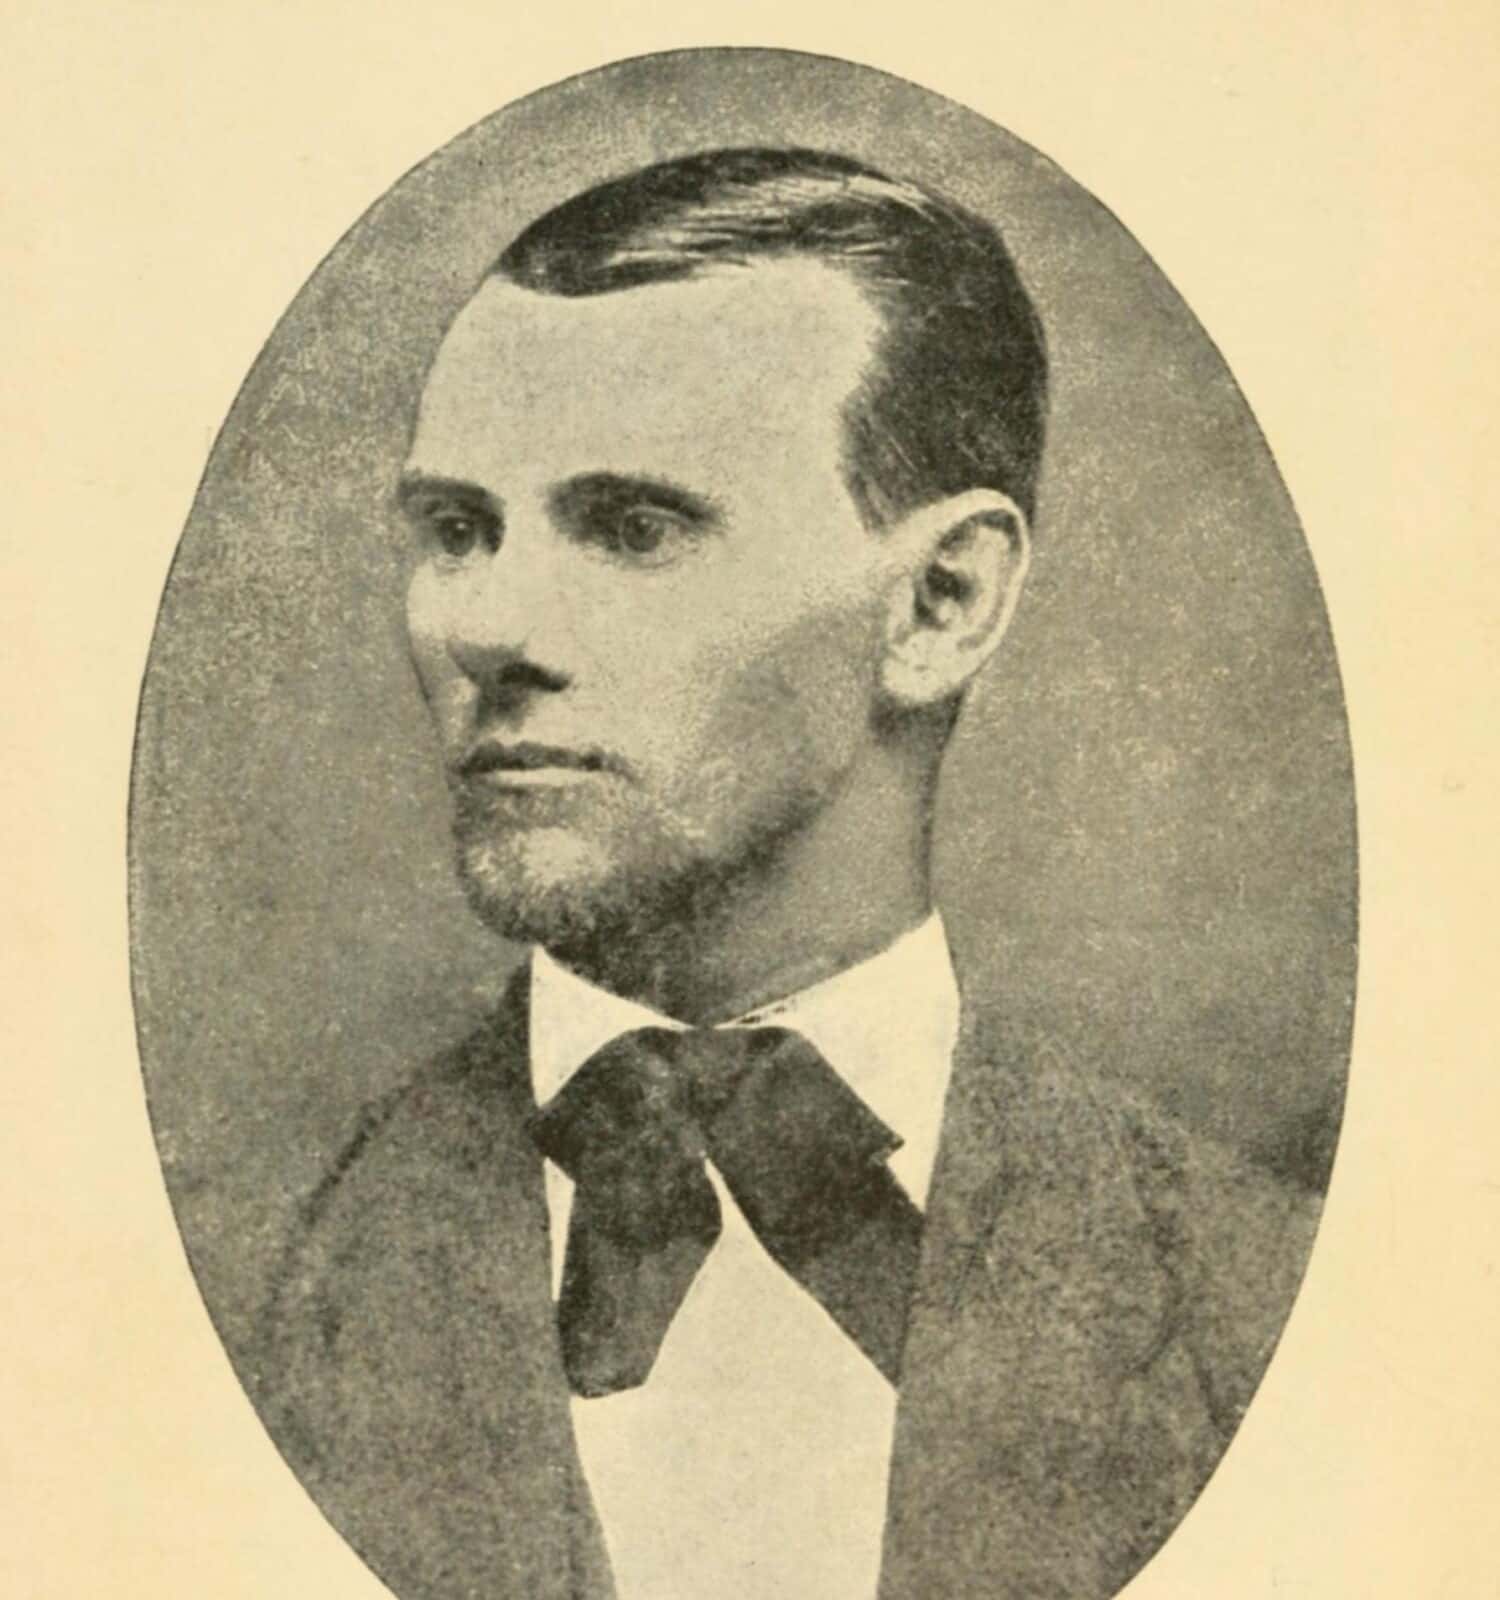 Jesse James (1847-1882).